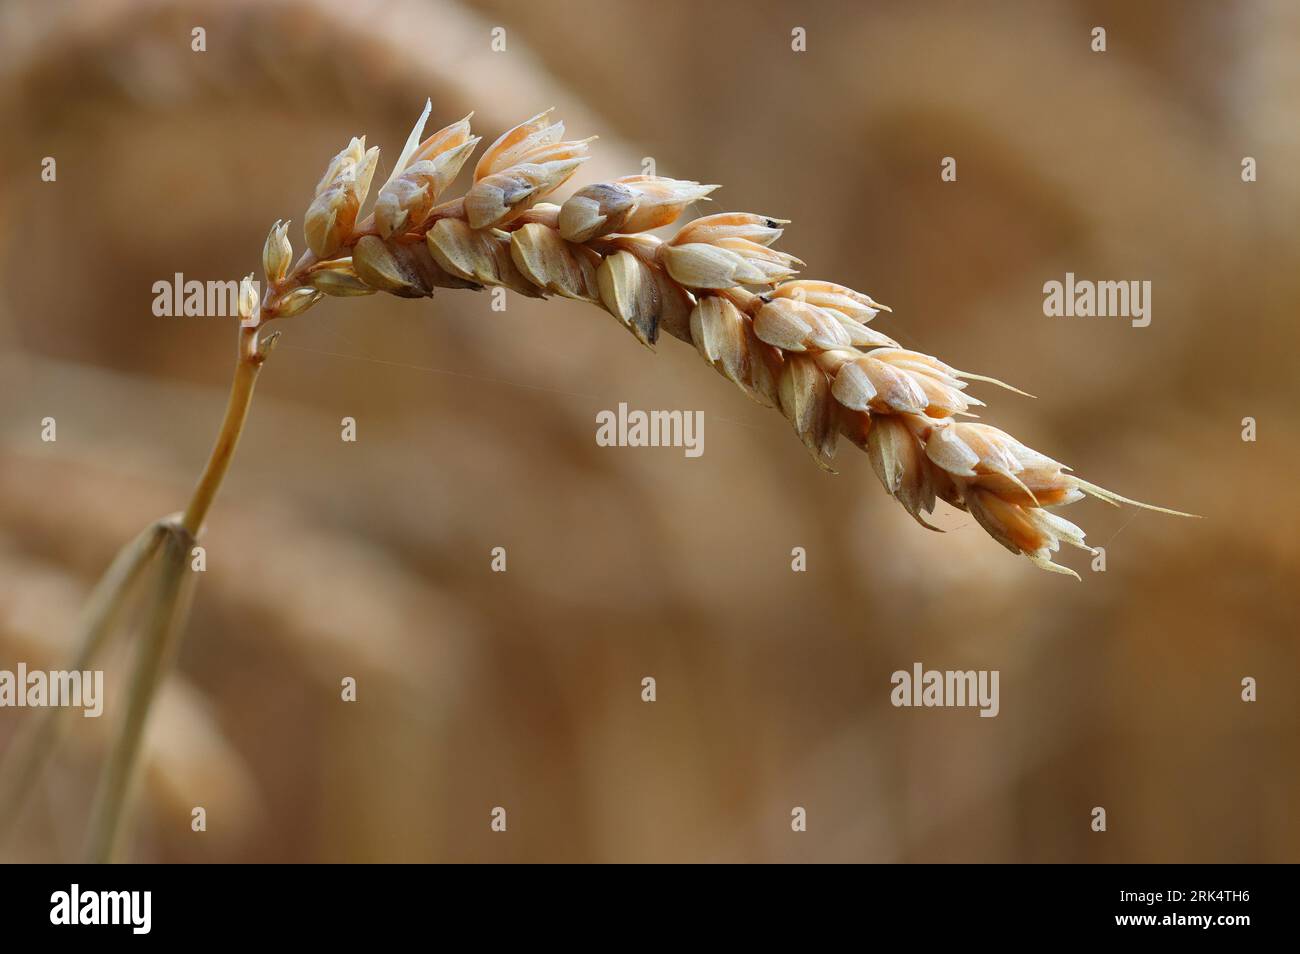 Close up image of Wheat, County Durham, England, UK Stock Photo